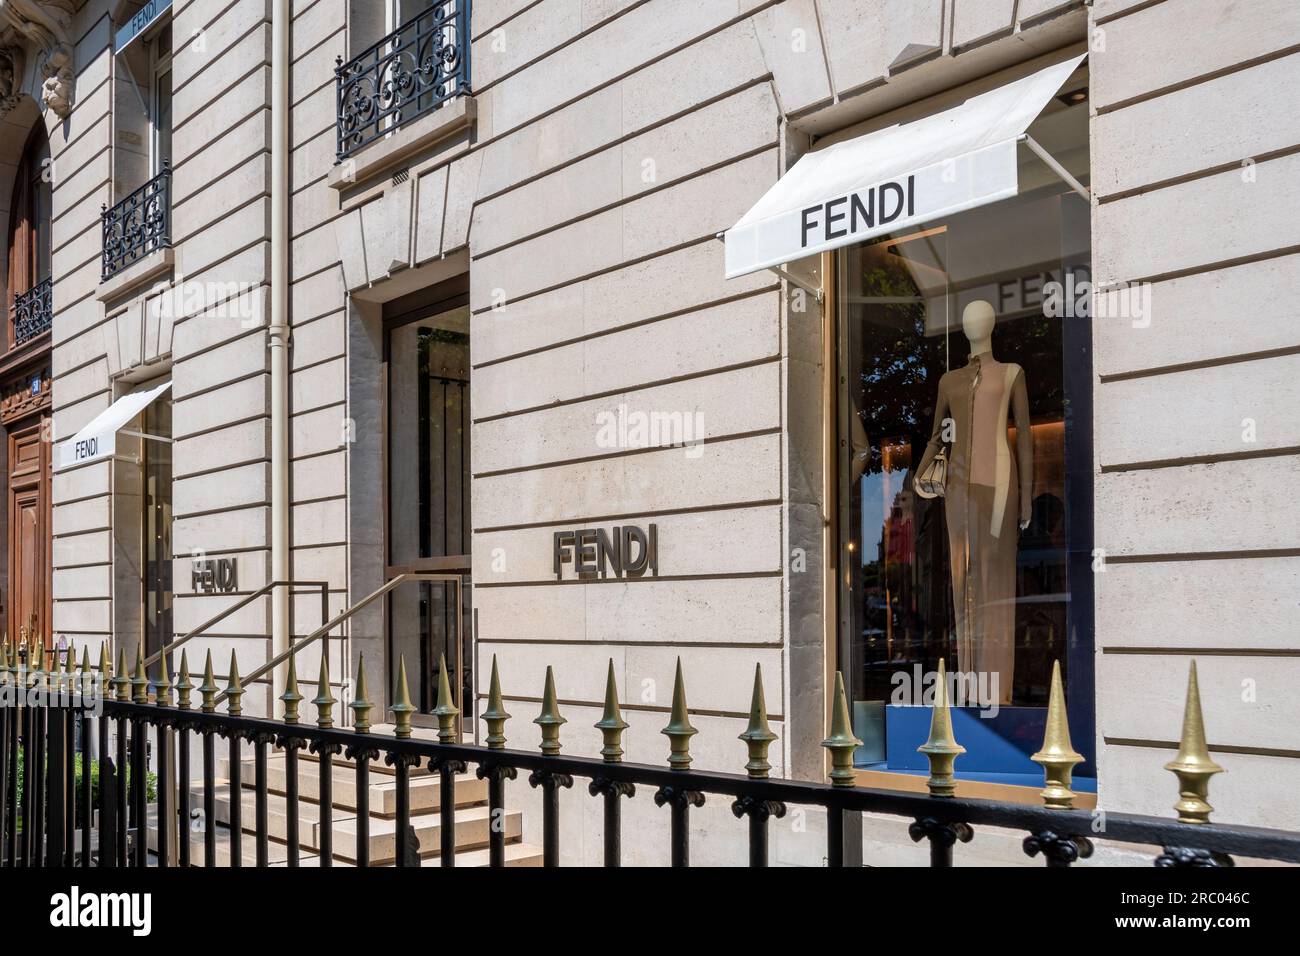 Vista esterna di un negozio Fendi nel quartiere Champs-Elysees di Parigi, Francia. Fendi è un marchio italiano specializzato in moda e lusso Foto Stock